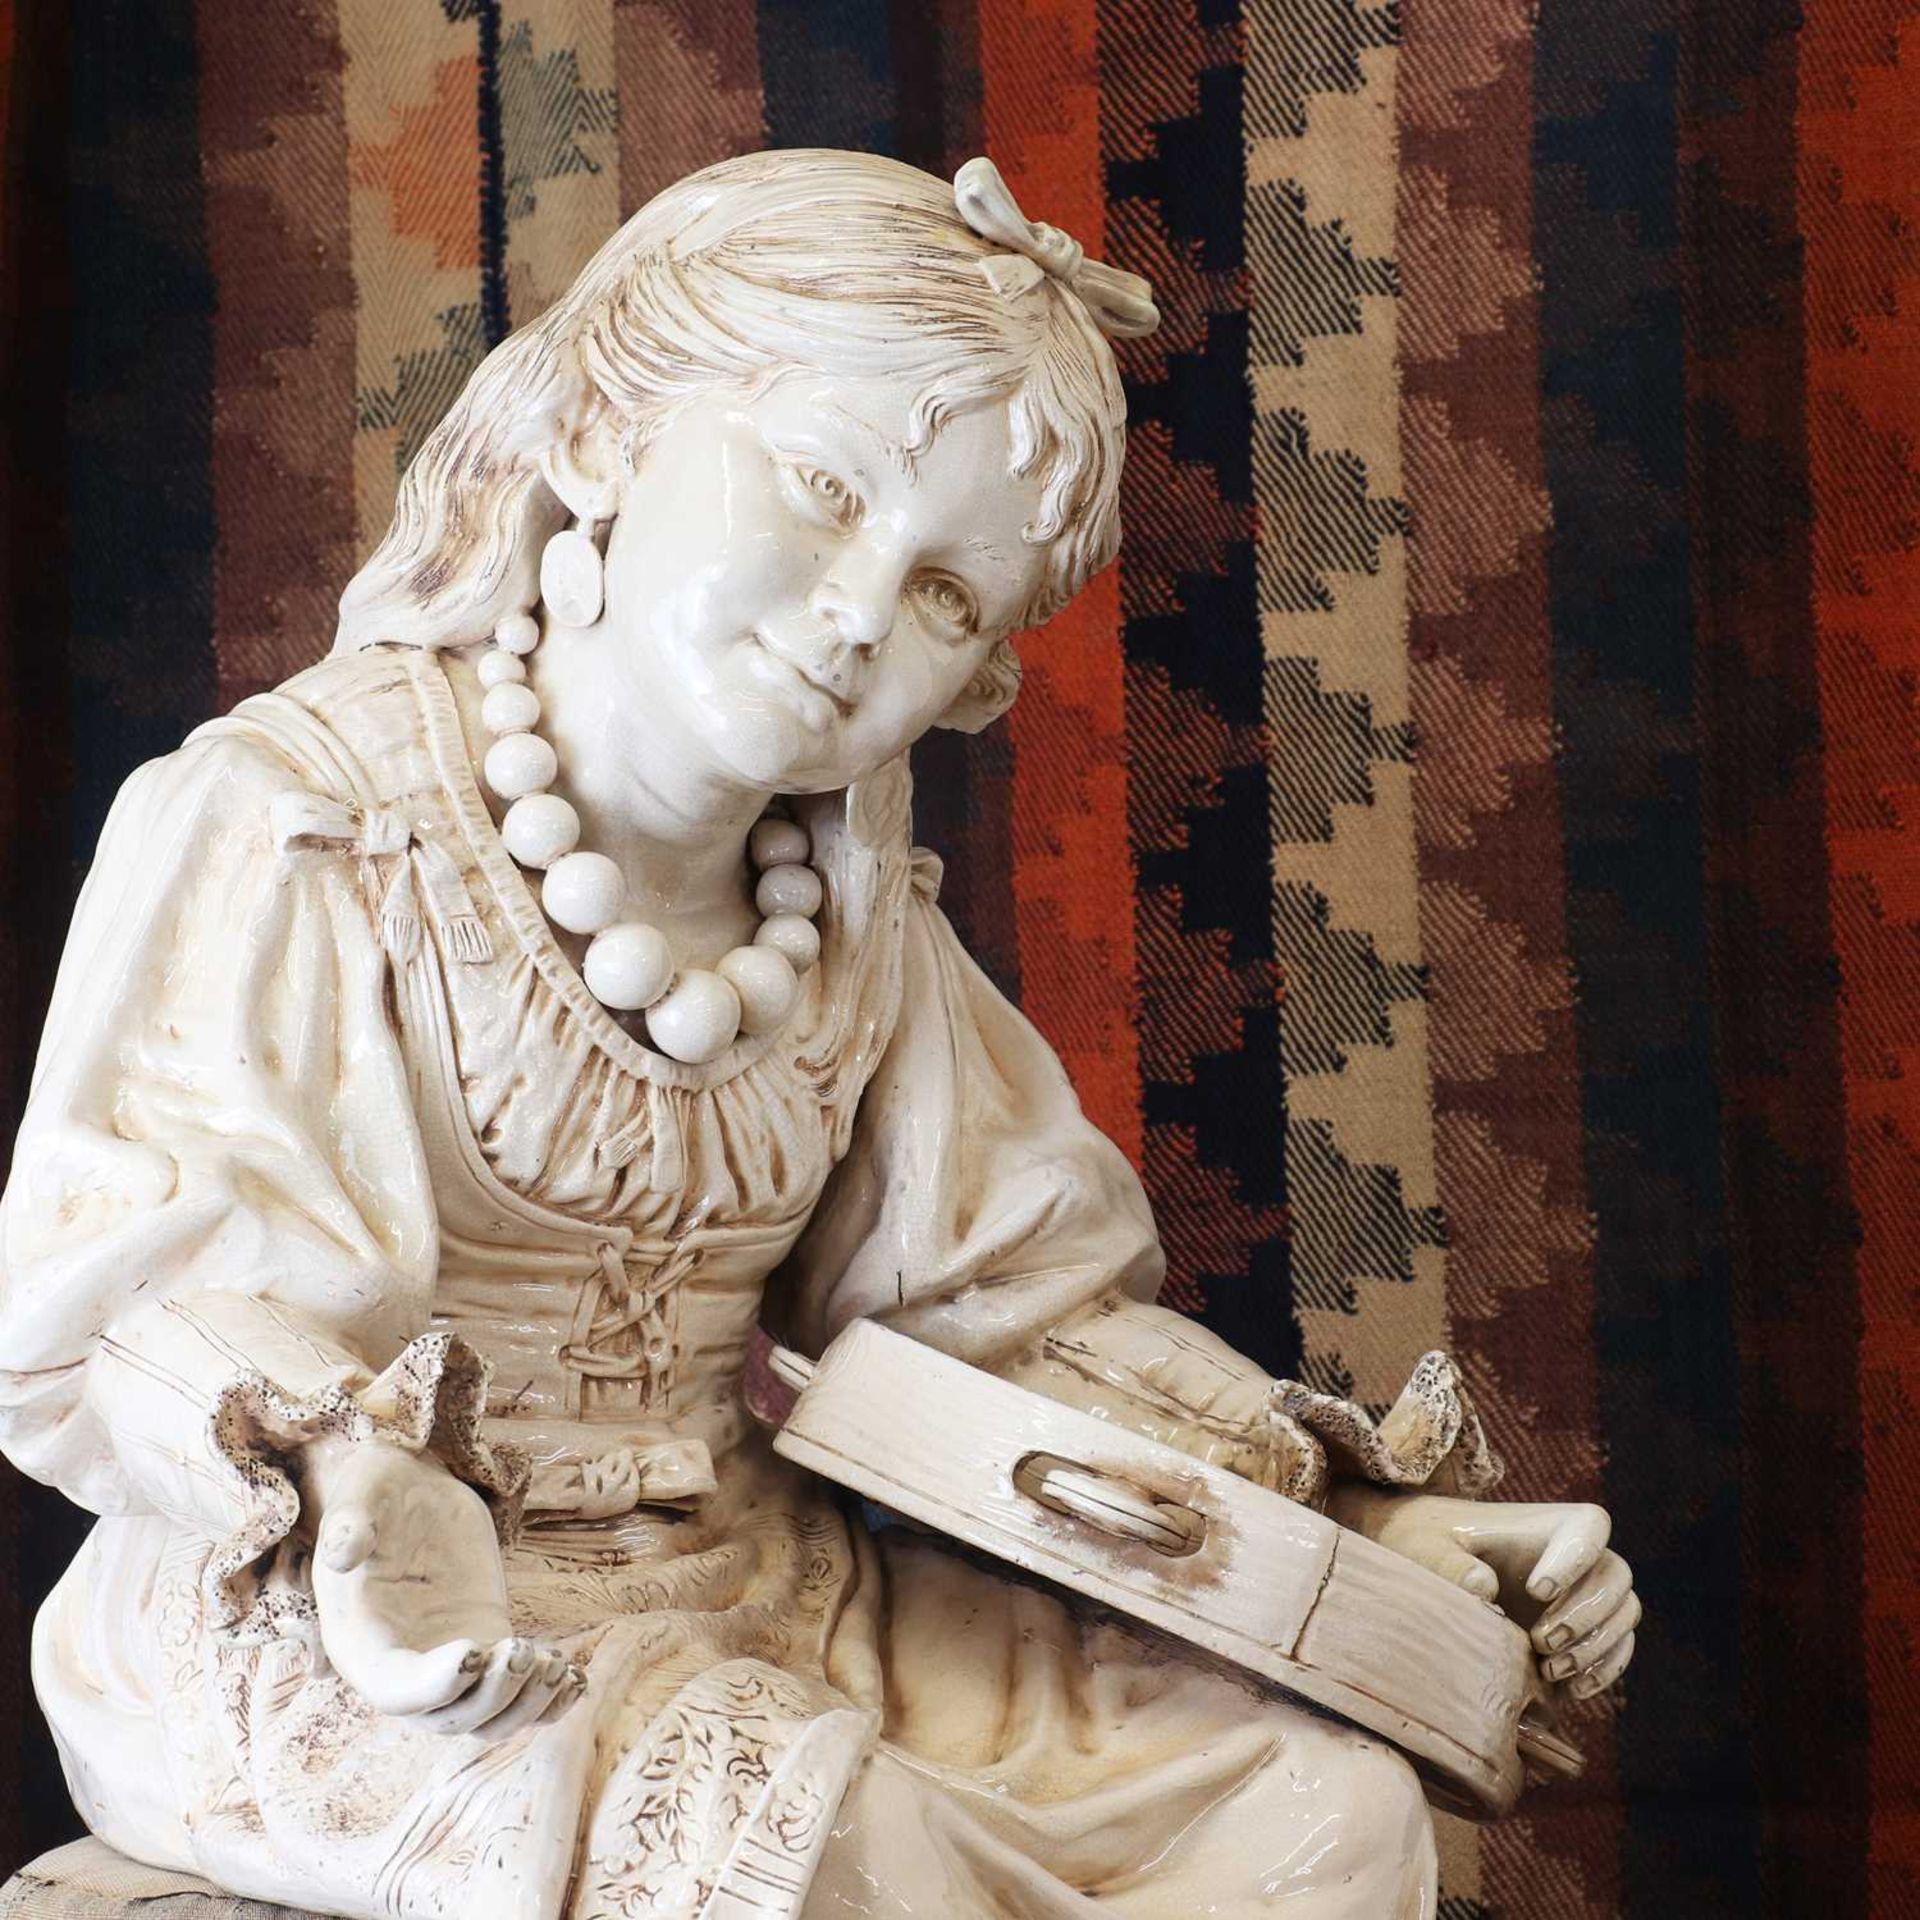 A Bretby glazed pottery figure, - Image 5 of 6